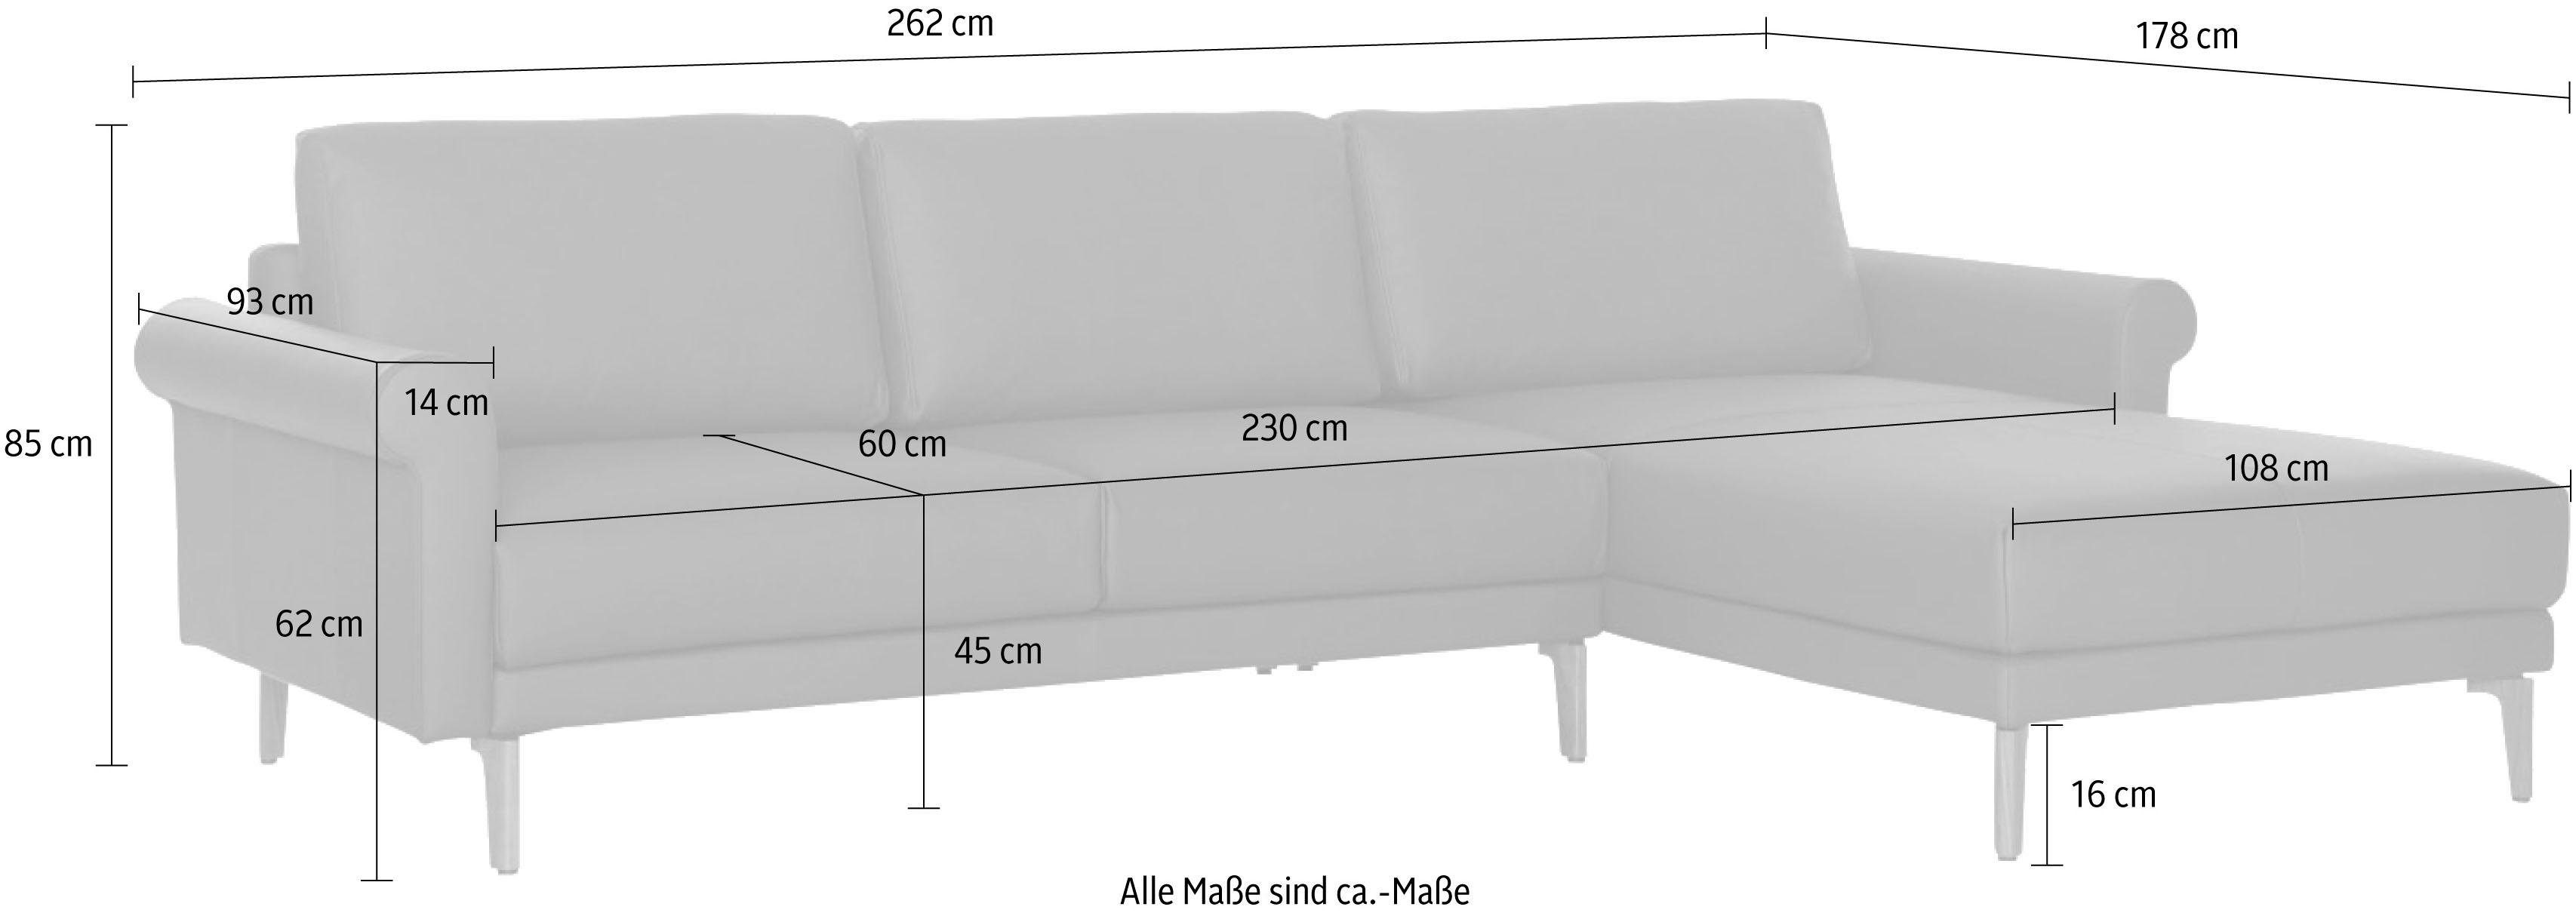 262 modern cm, Schnecke hülsta Nussbaum Breite sofa Armlehne Ecksofa Fuß hs.450, Landhaus,